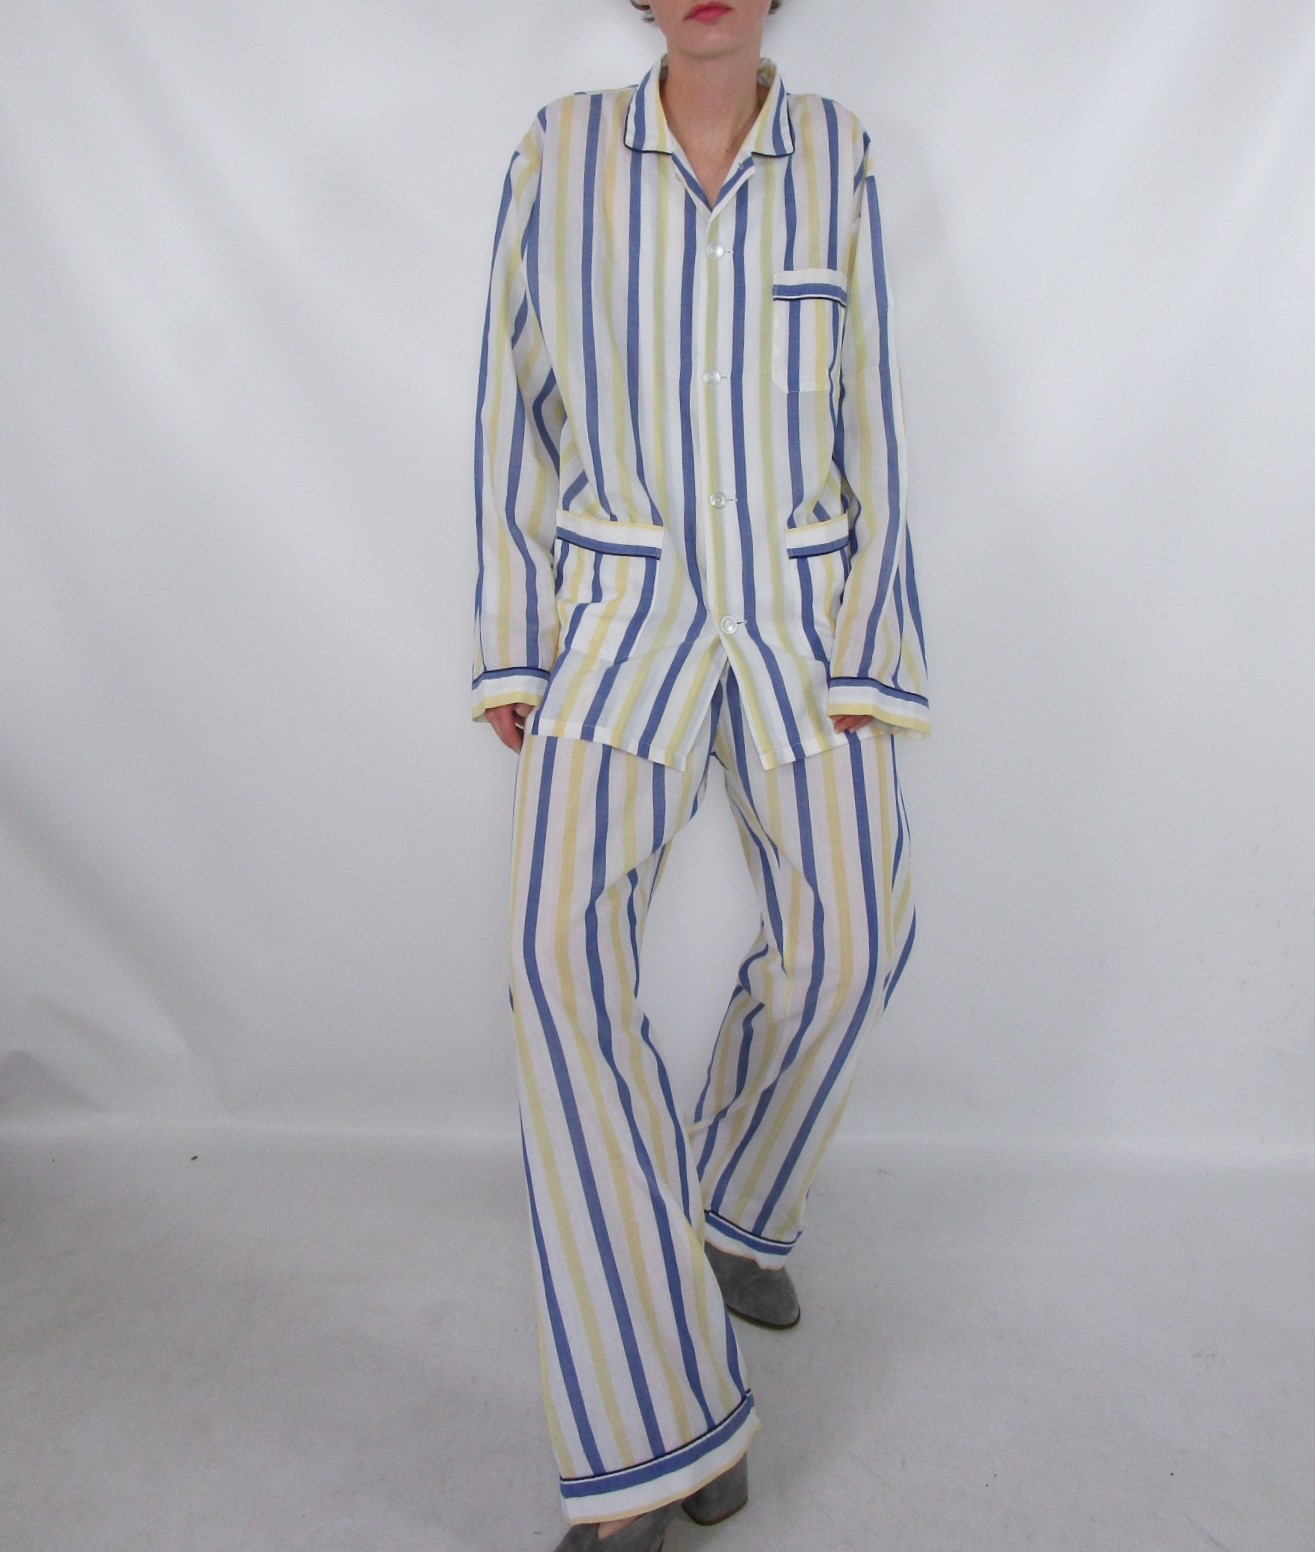 Bas pyjama ajouré rayures bleu blanc jaune L/XL